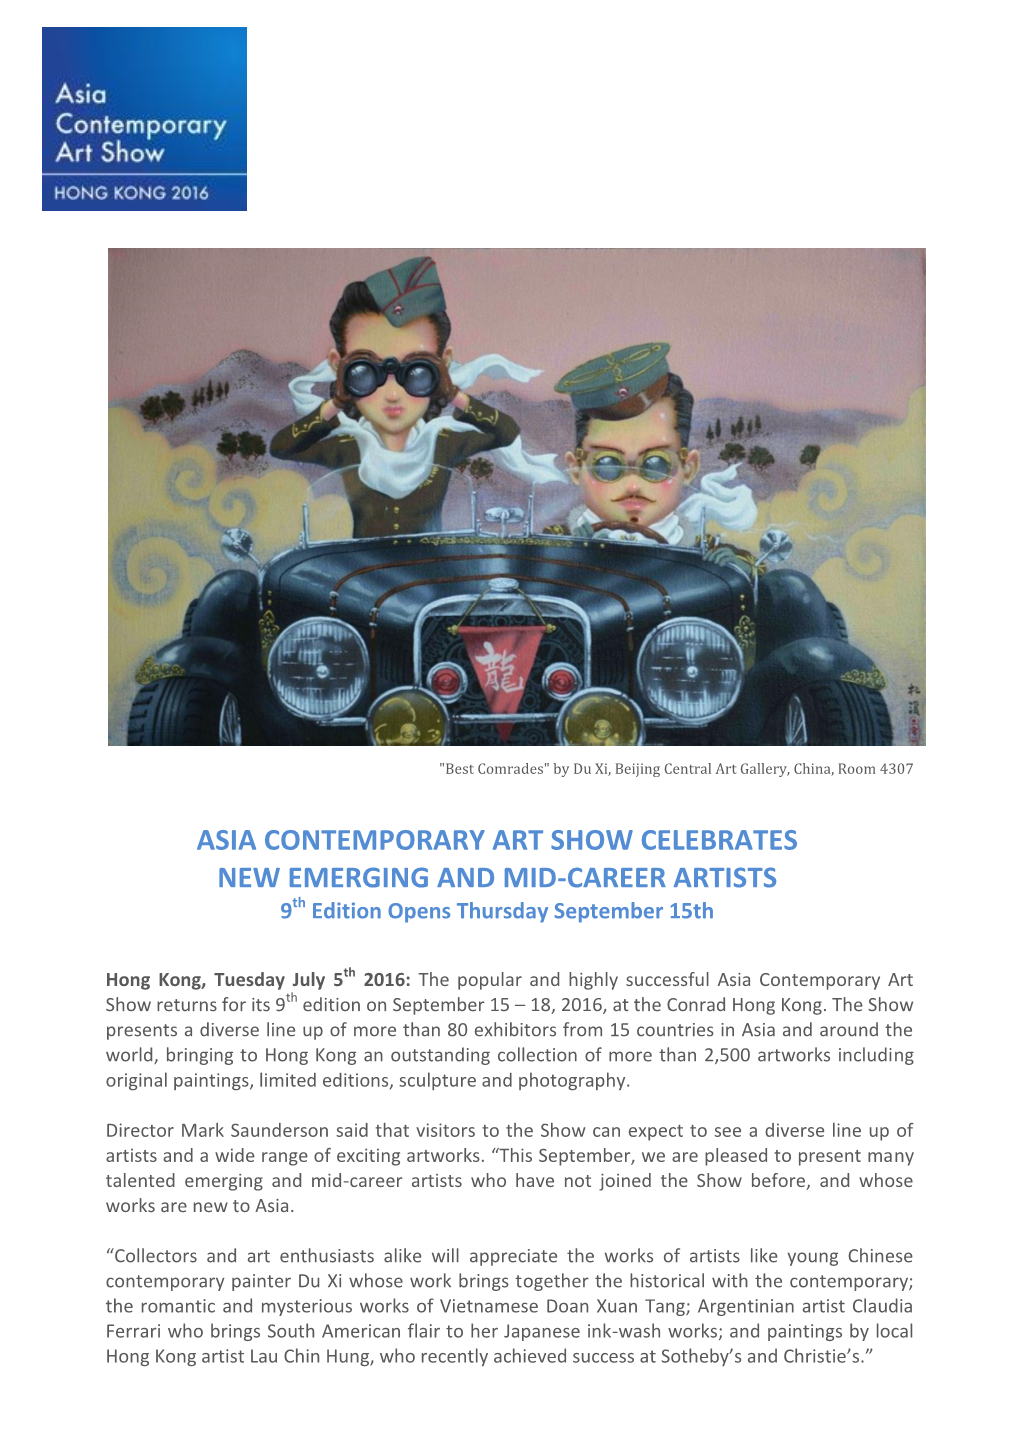 Asia Contemporary Art Show Celebrates New Emerging